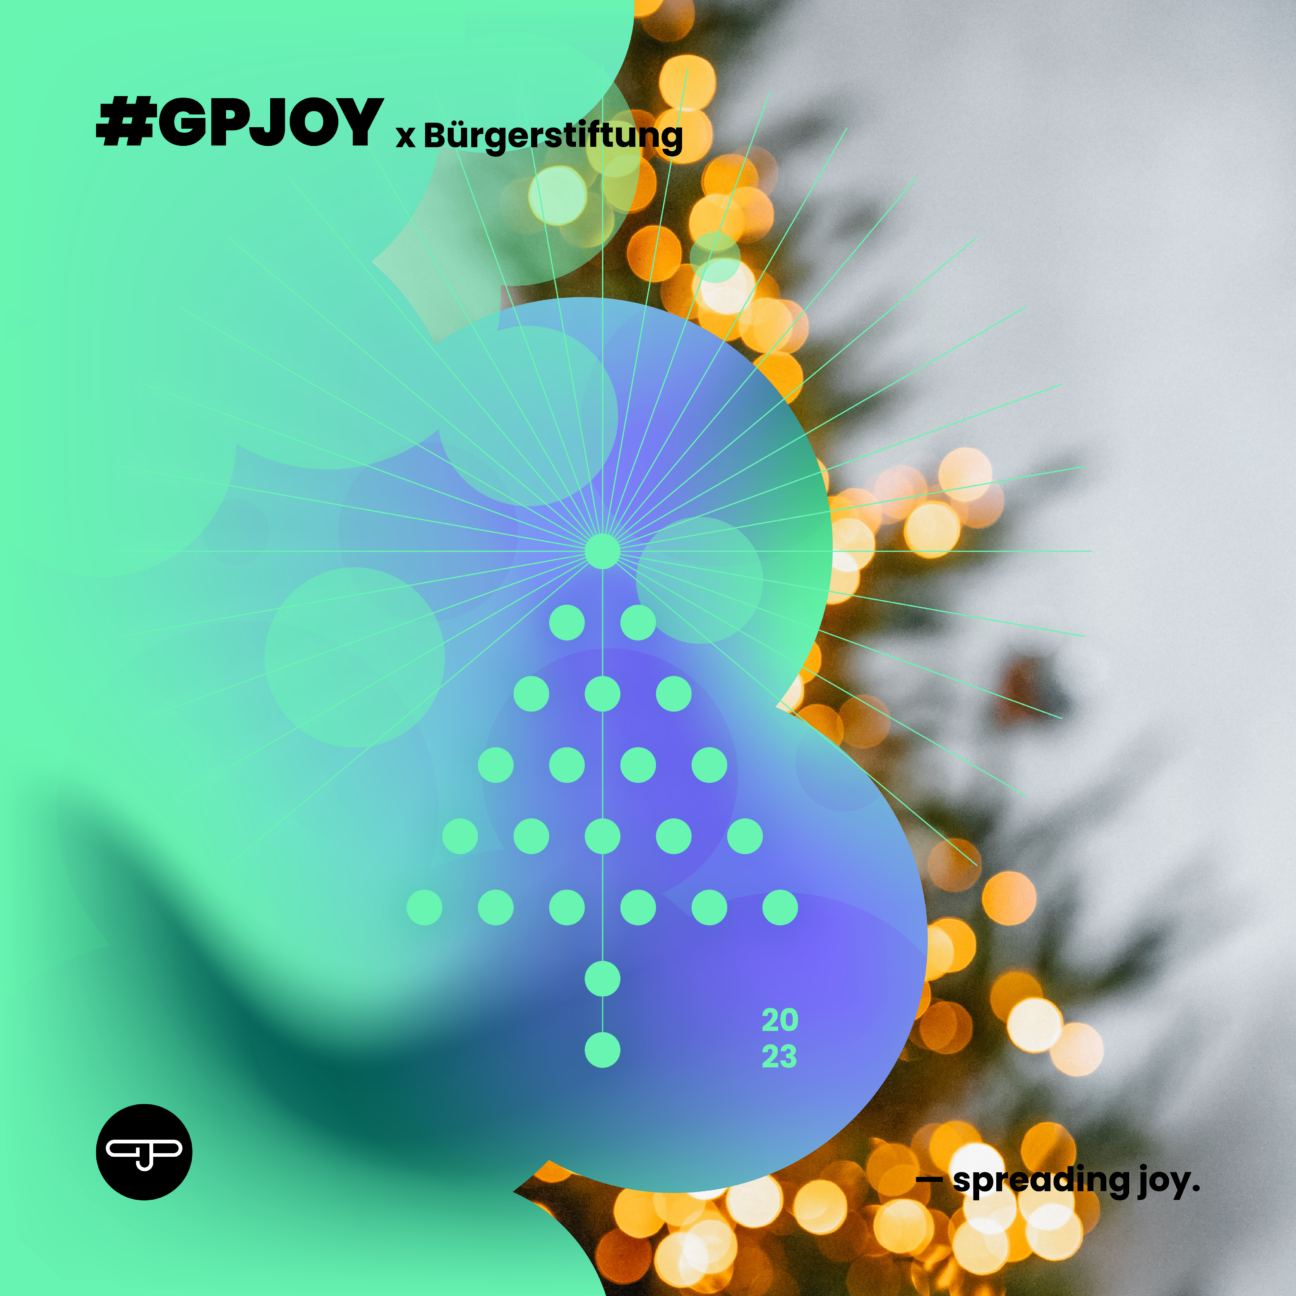 Oben links steht geschrieben "#GPJJOY x Bürgerstiftung".
Im Hintergrund sind Lichter und die Umrisse eines Weihnachtsbaums zu sehen. Im Vordergund legt sich eine weihnachtliche Symbolik über das Bild.